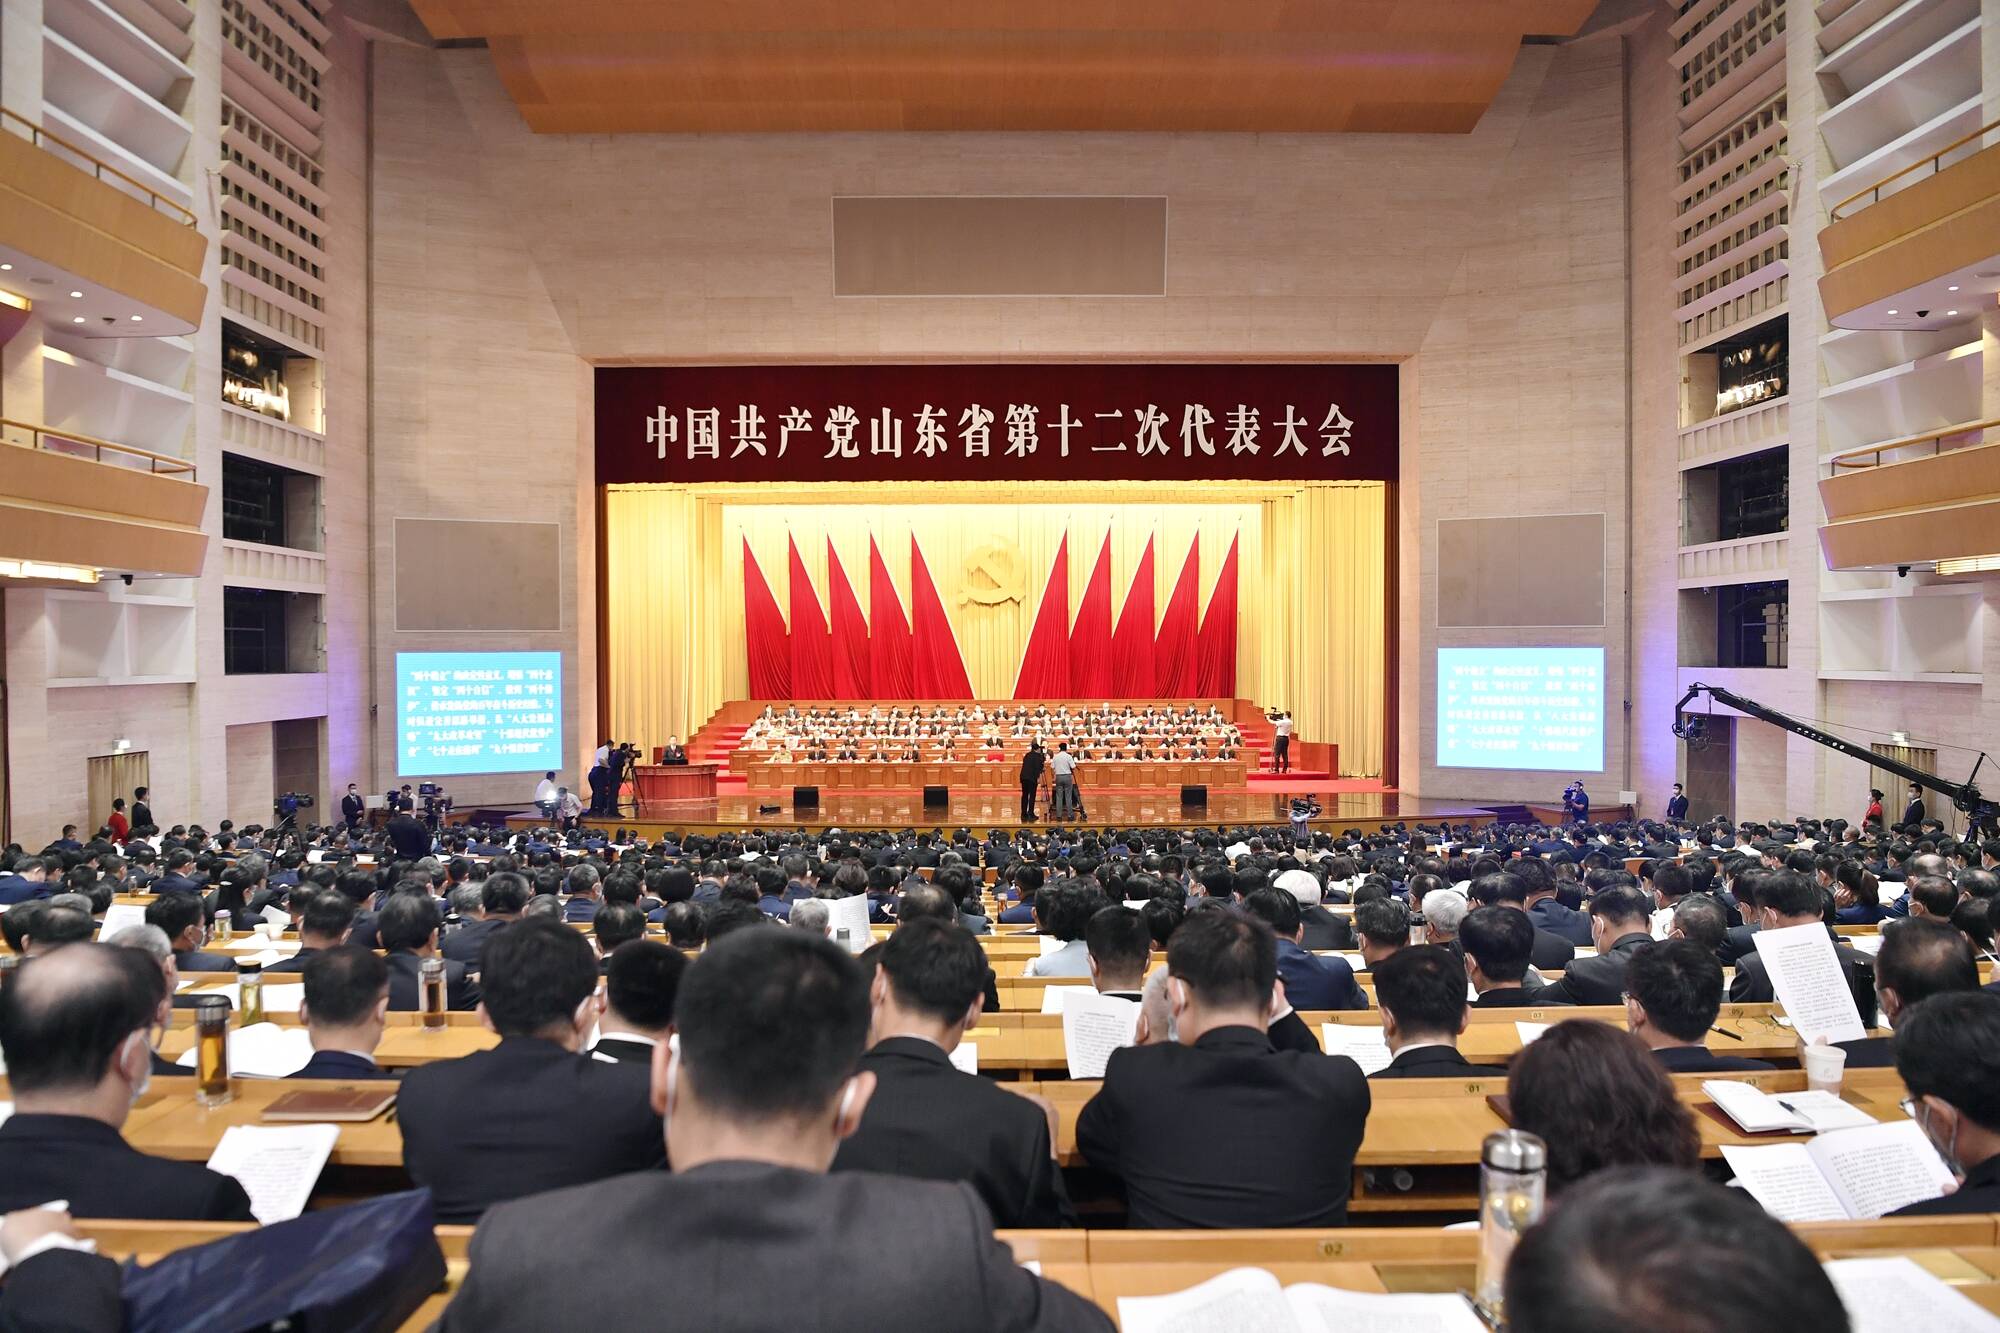 高清组图 | 中国共产党山东省第十二次代表大会开幕